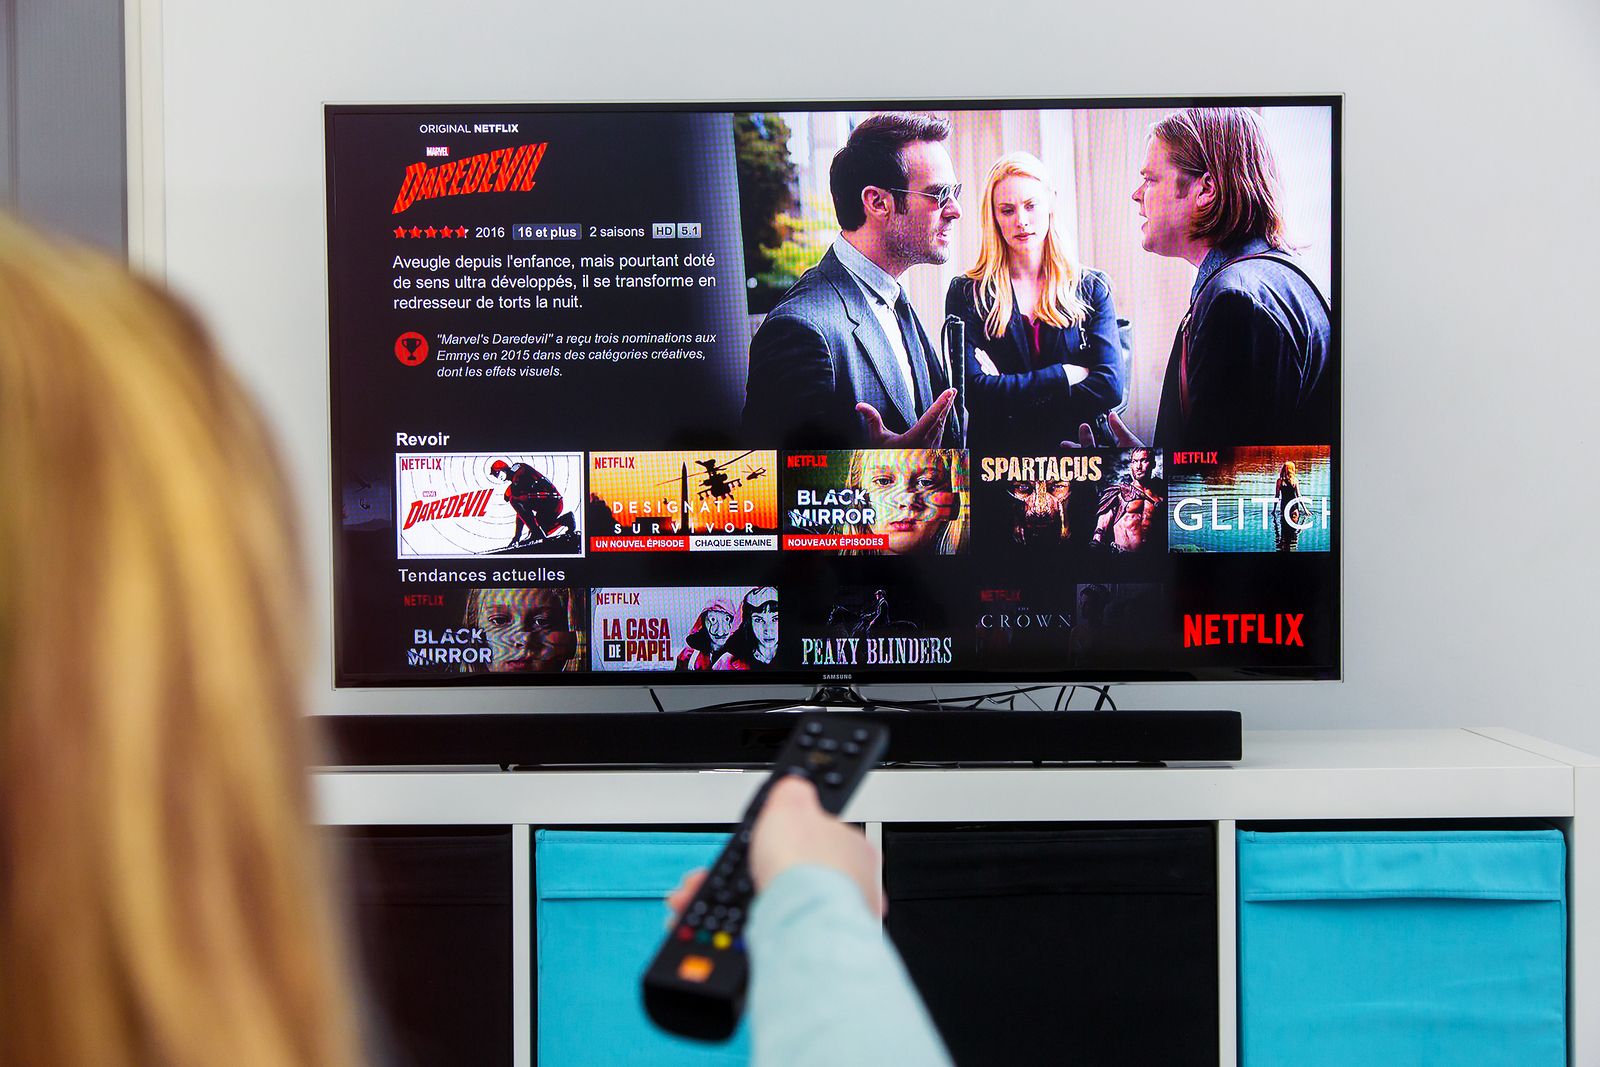 ¿Cómo puedes descargar series y películas en Netflix? Apunta estos consejos y requisitos